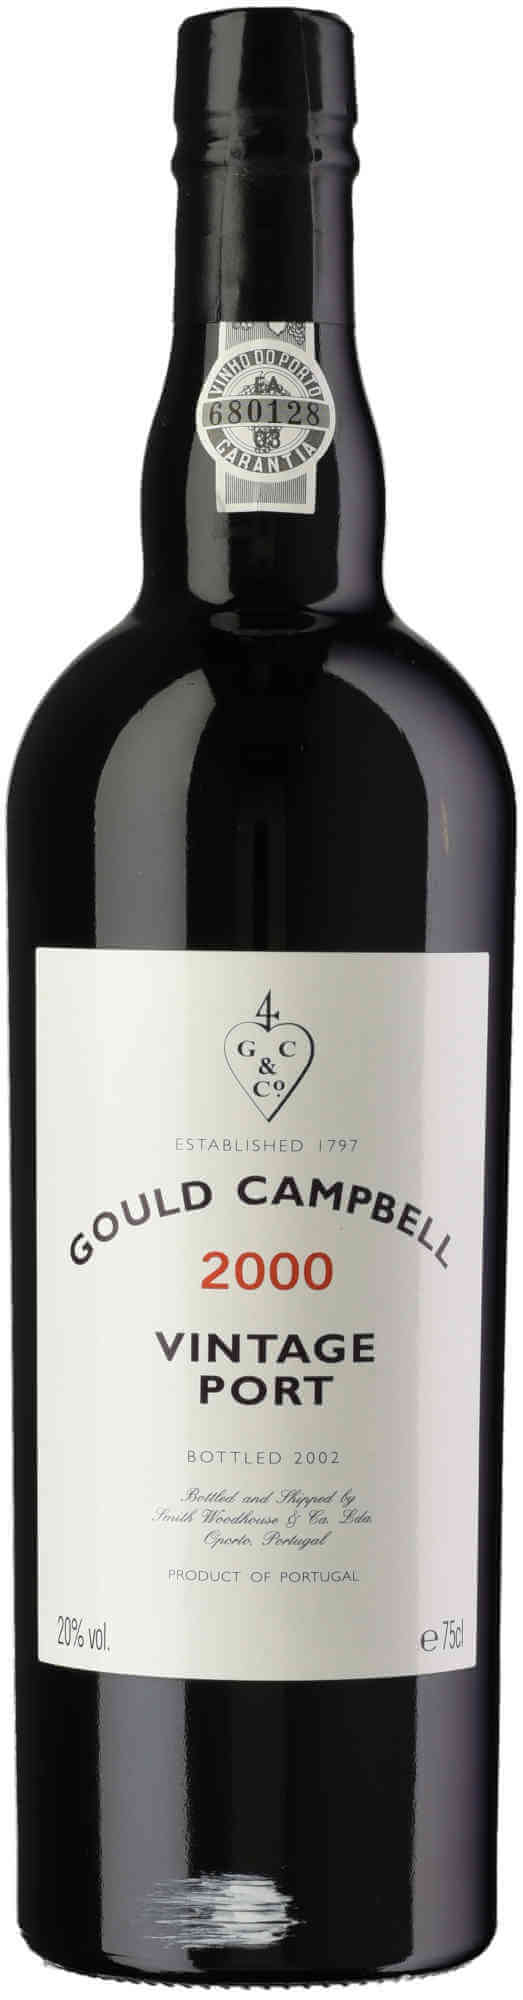 Gould-Campbell-Vintage-Port-2000